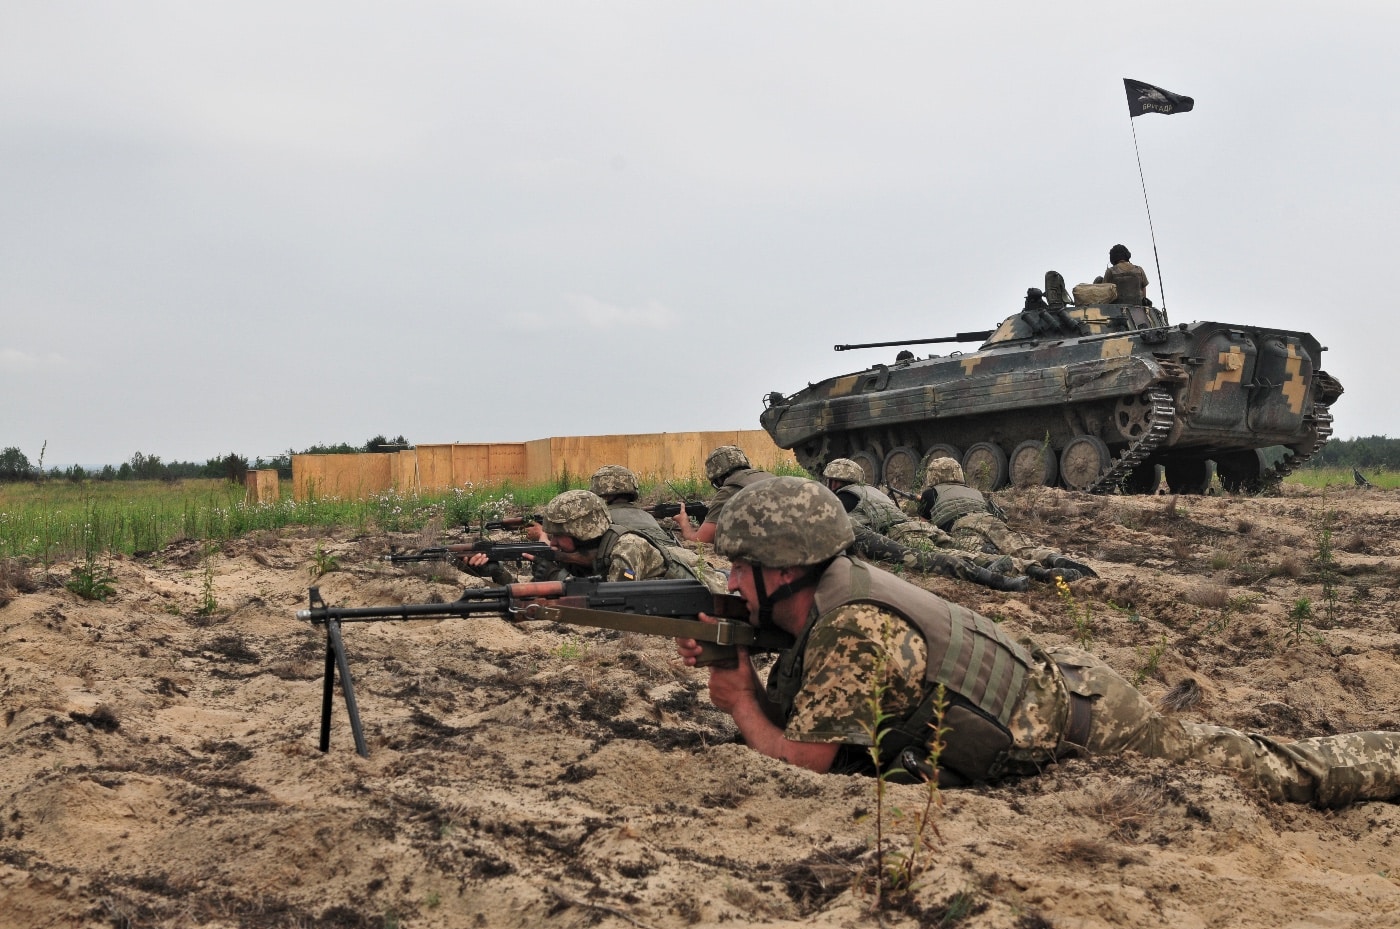 Ukrainian territorial defense troops work with American soldiers in 2016